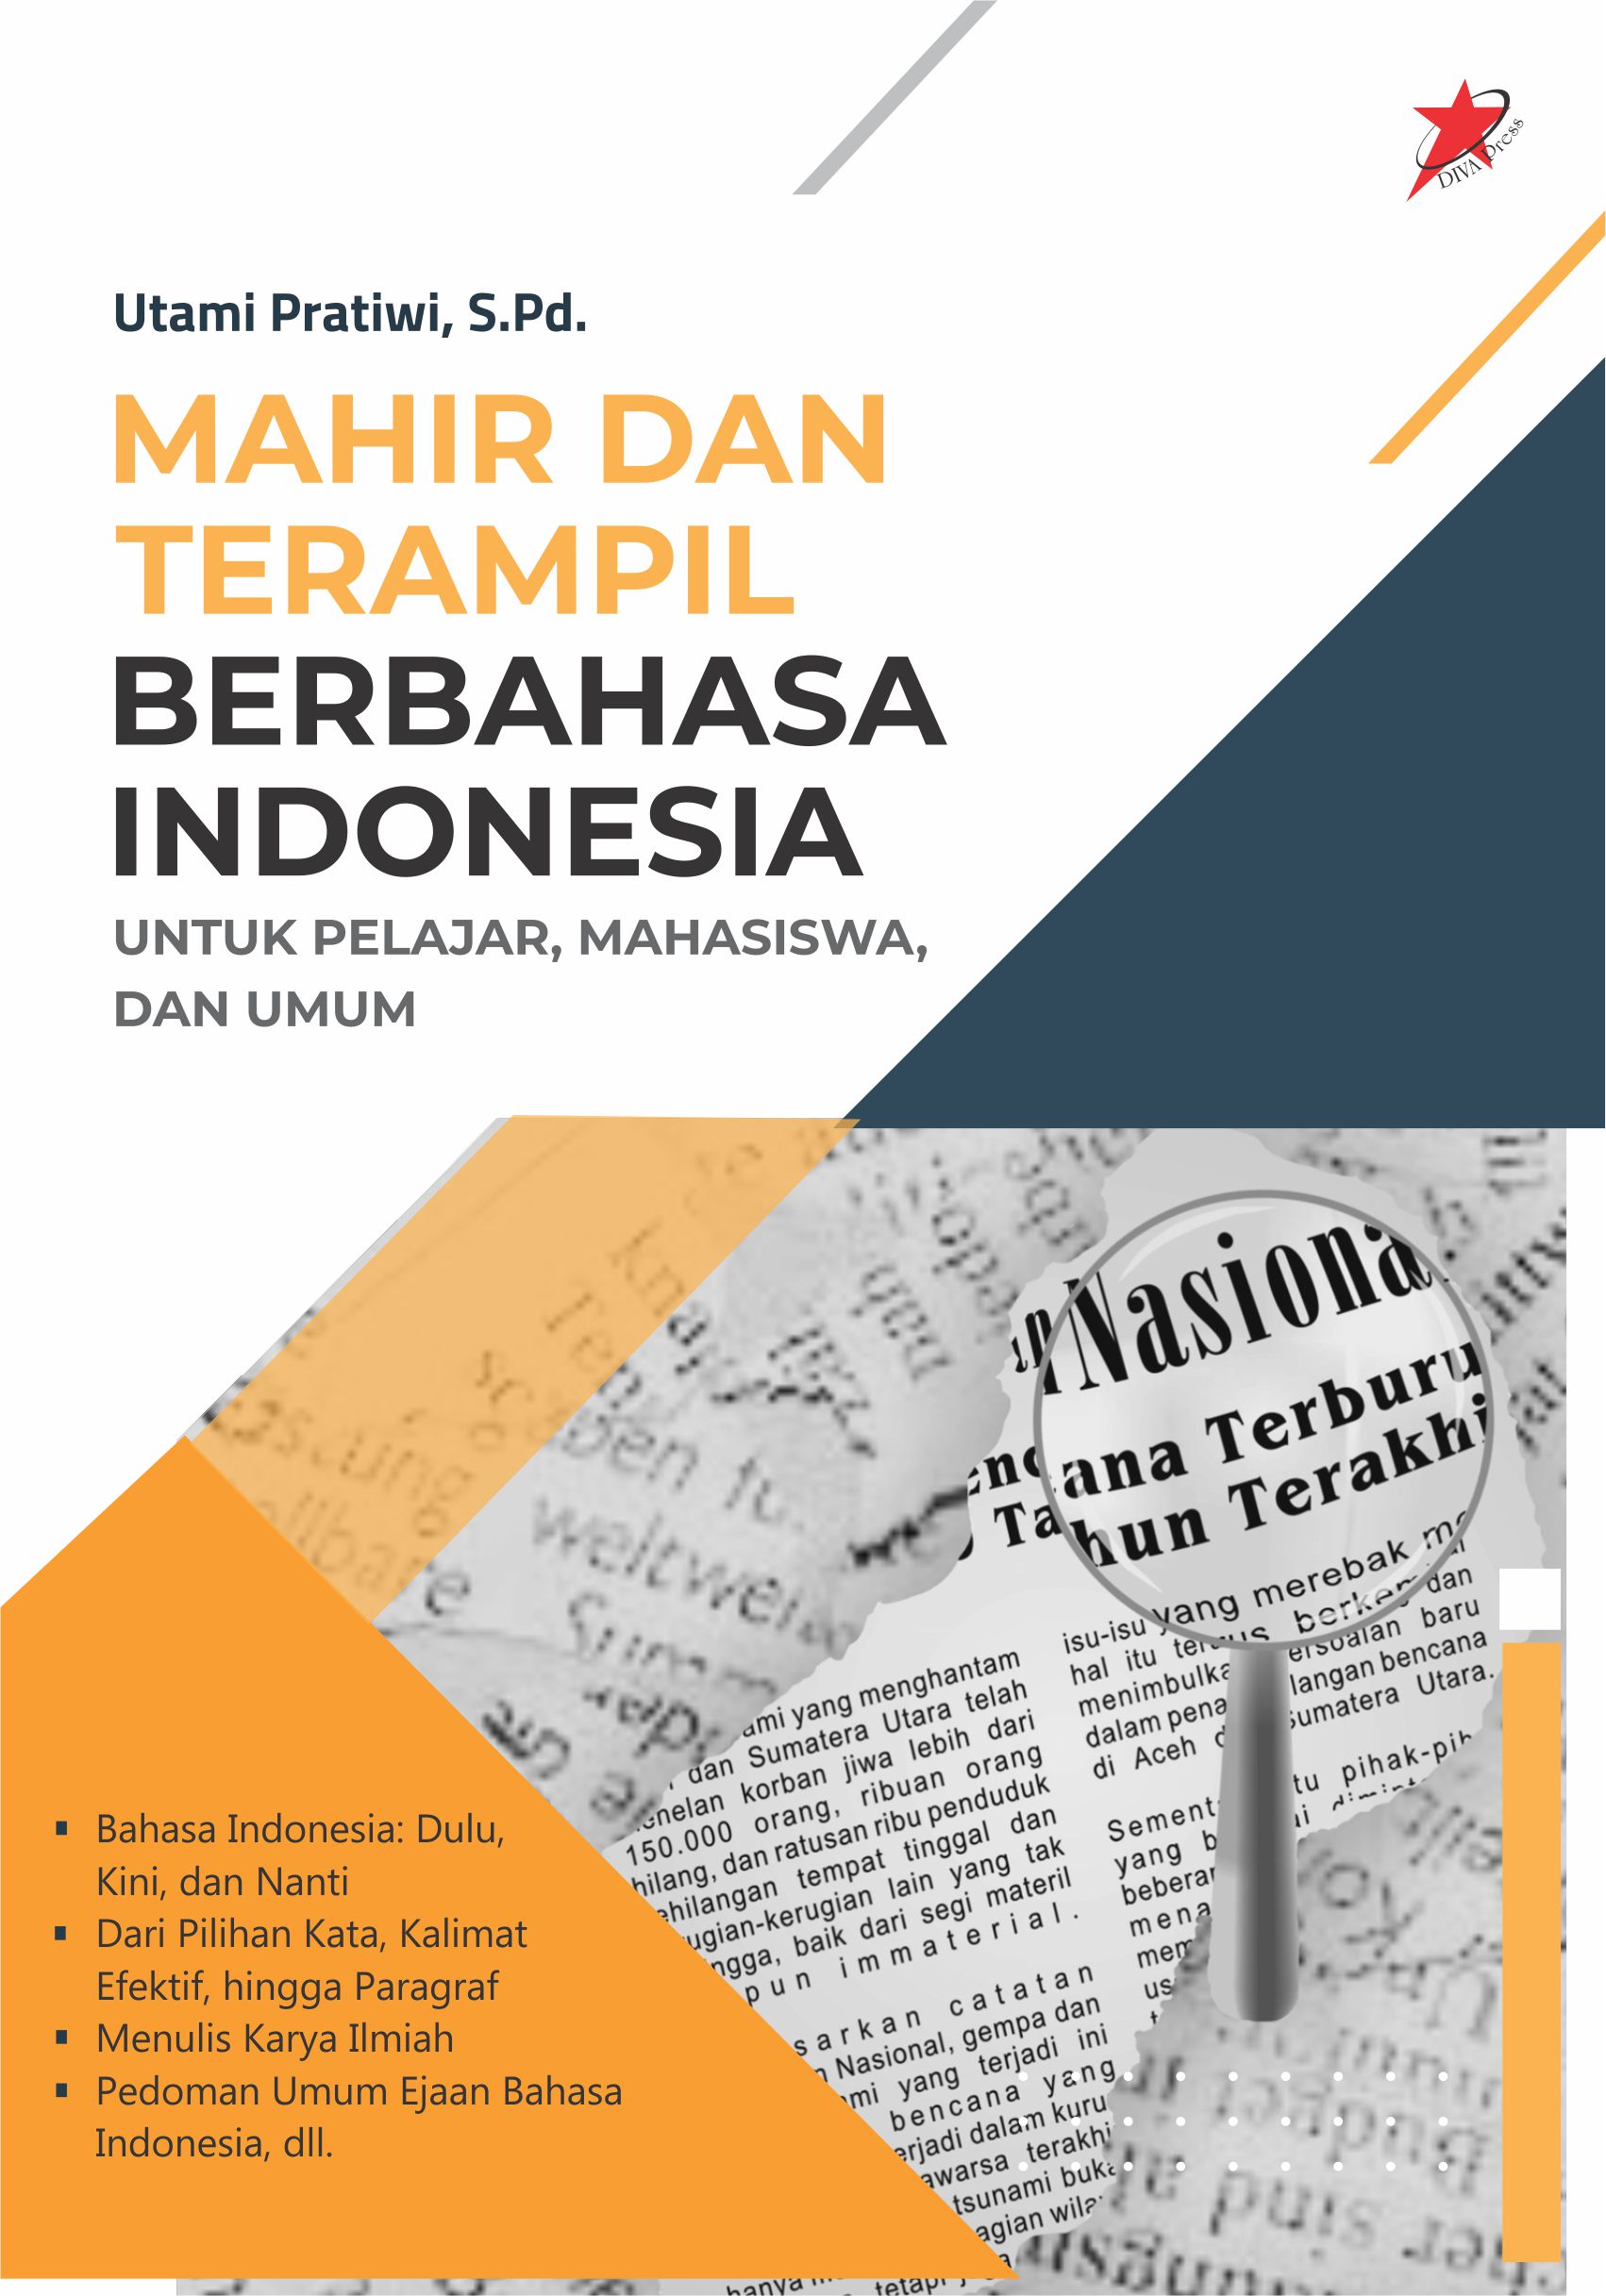 Mahir dan terampil berbahasa Indonesia [sumber elektronis]